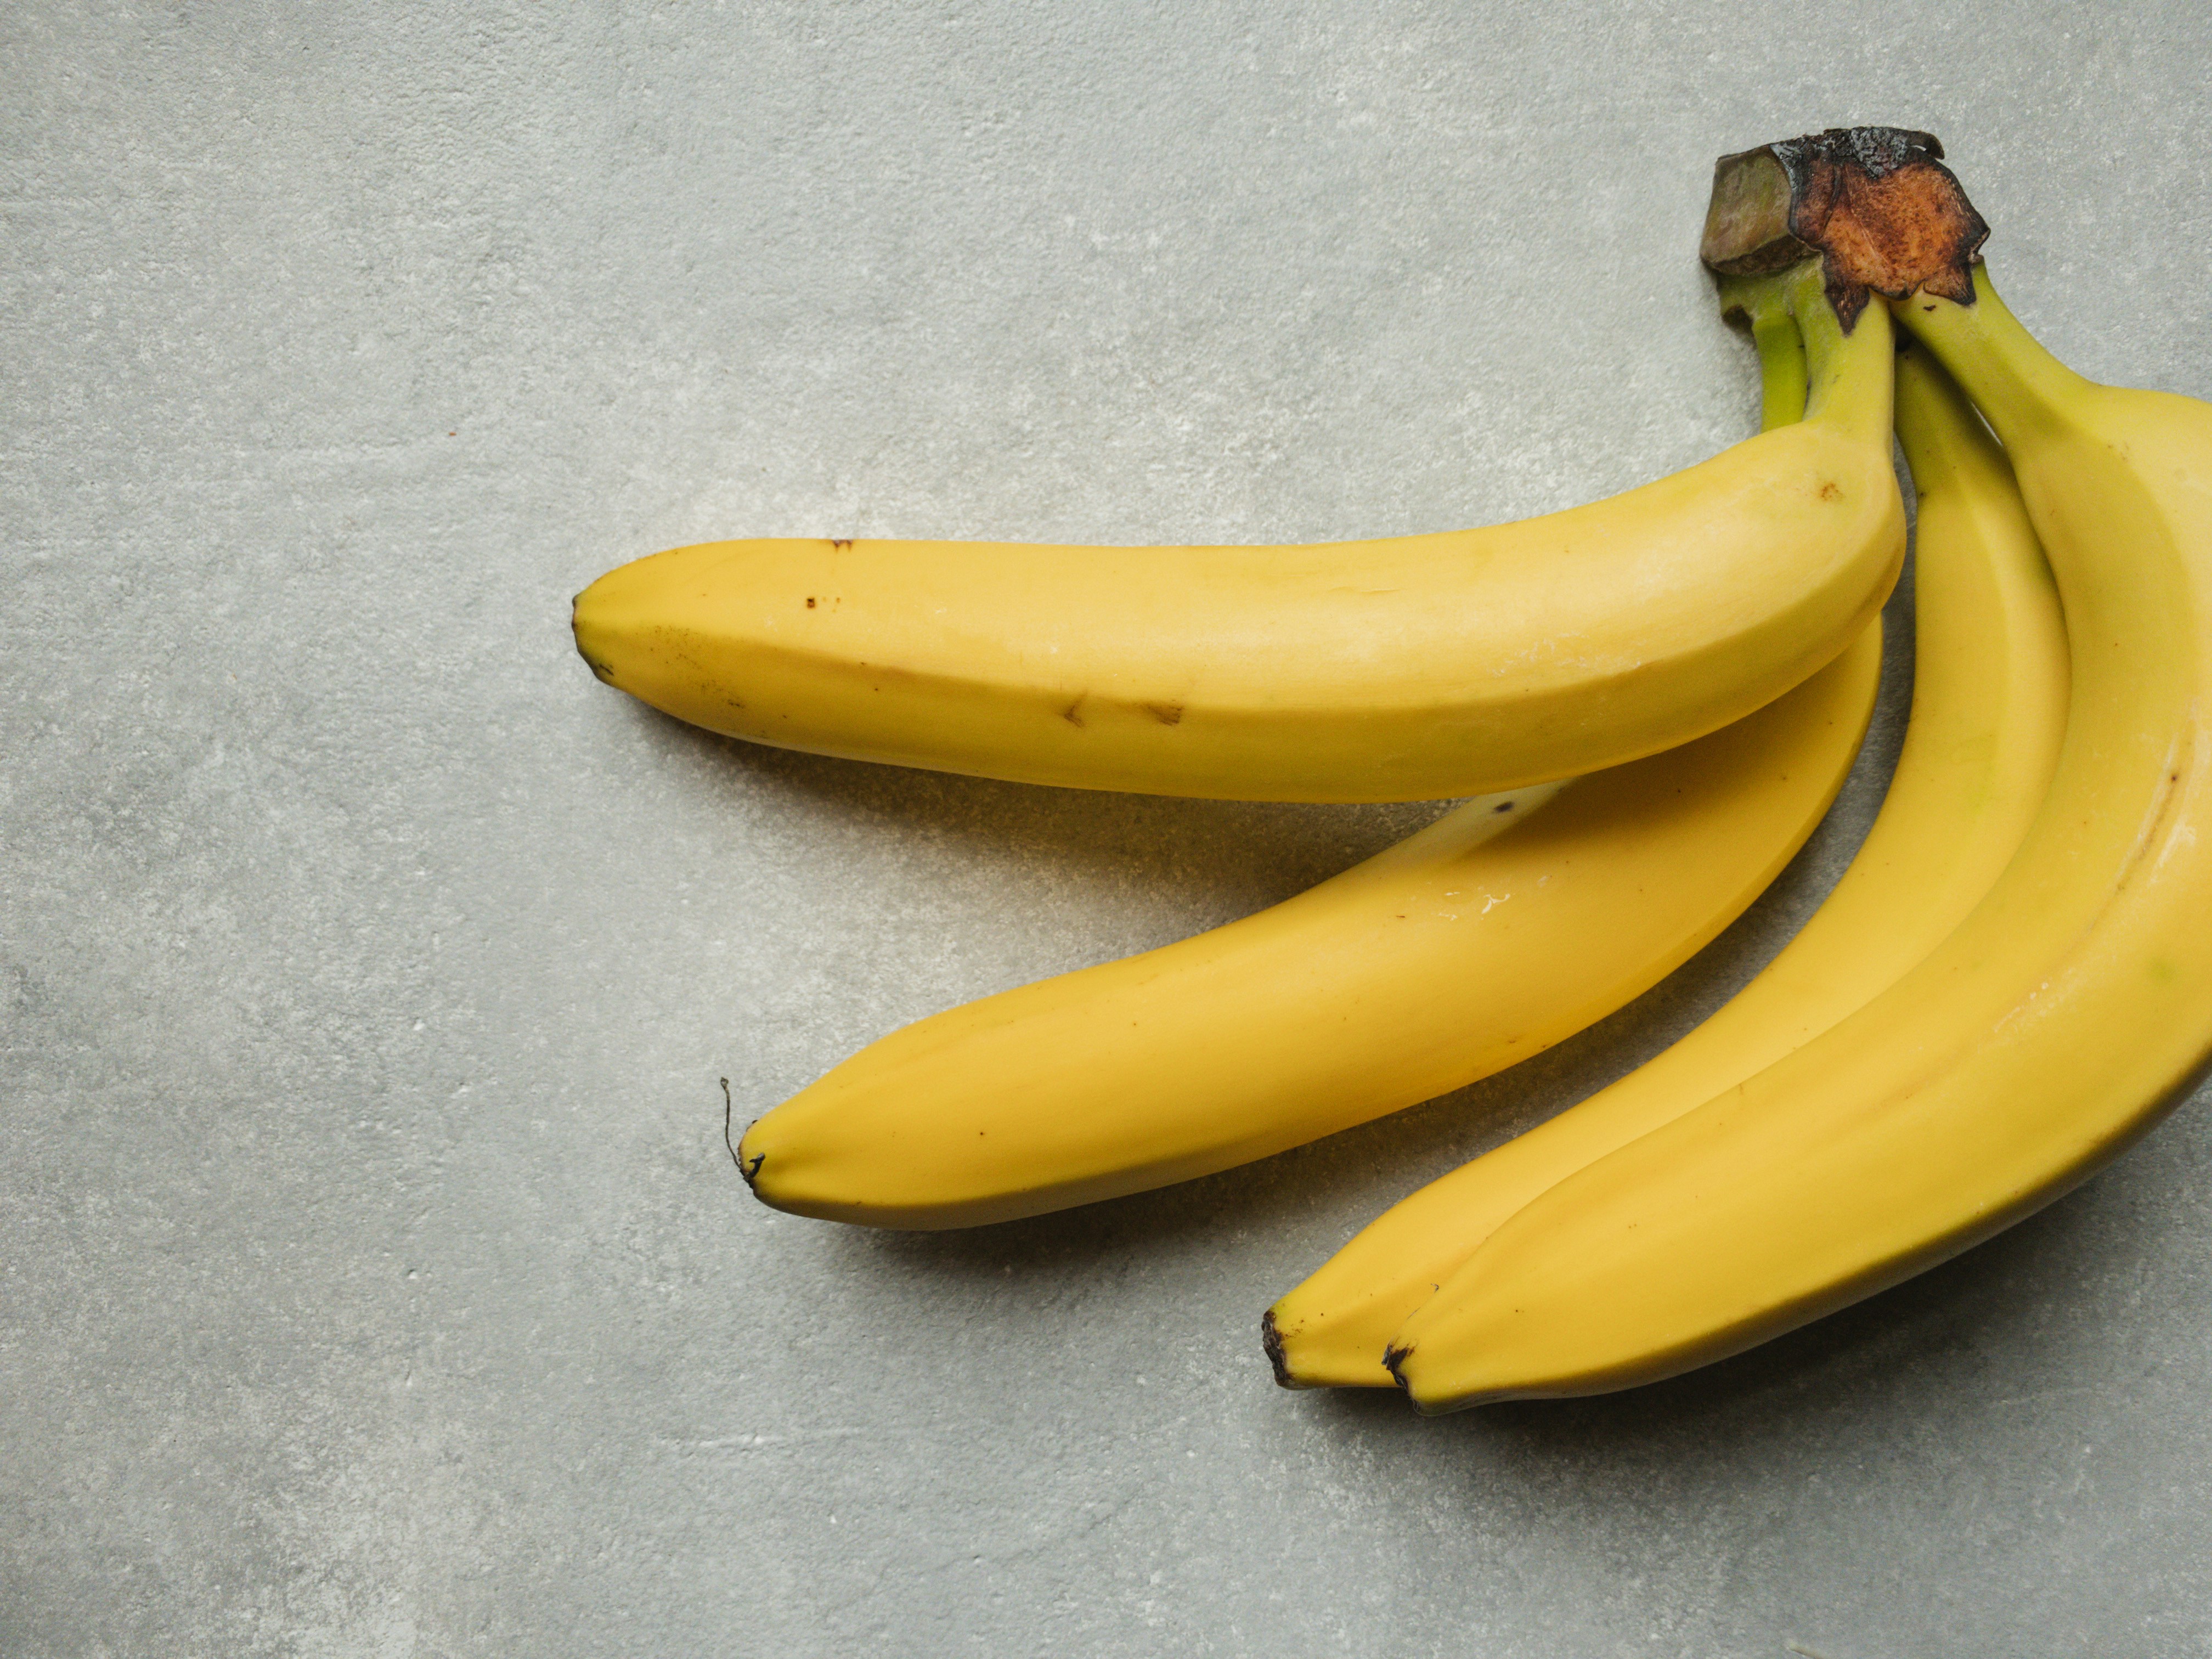 Verrassend: dit blijkt de beste manier om bananen te bewaren